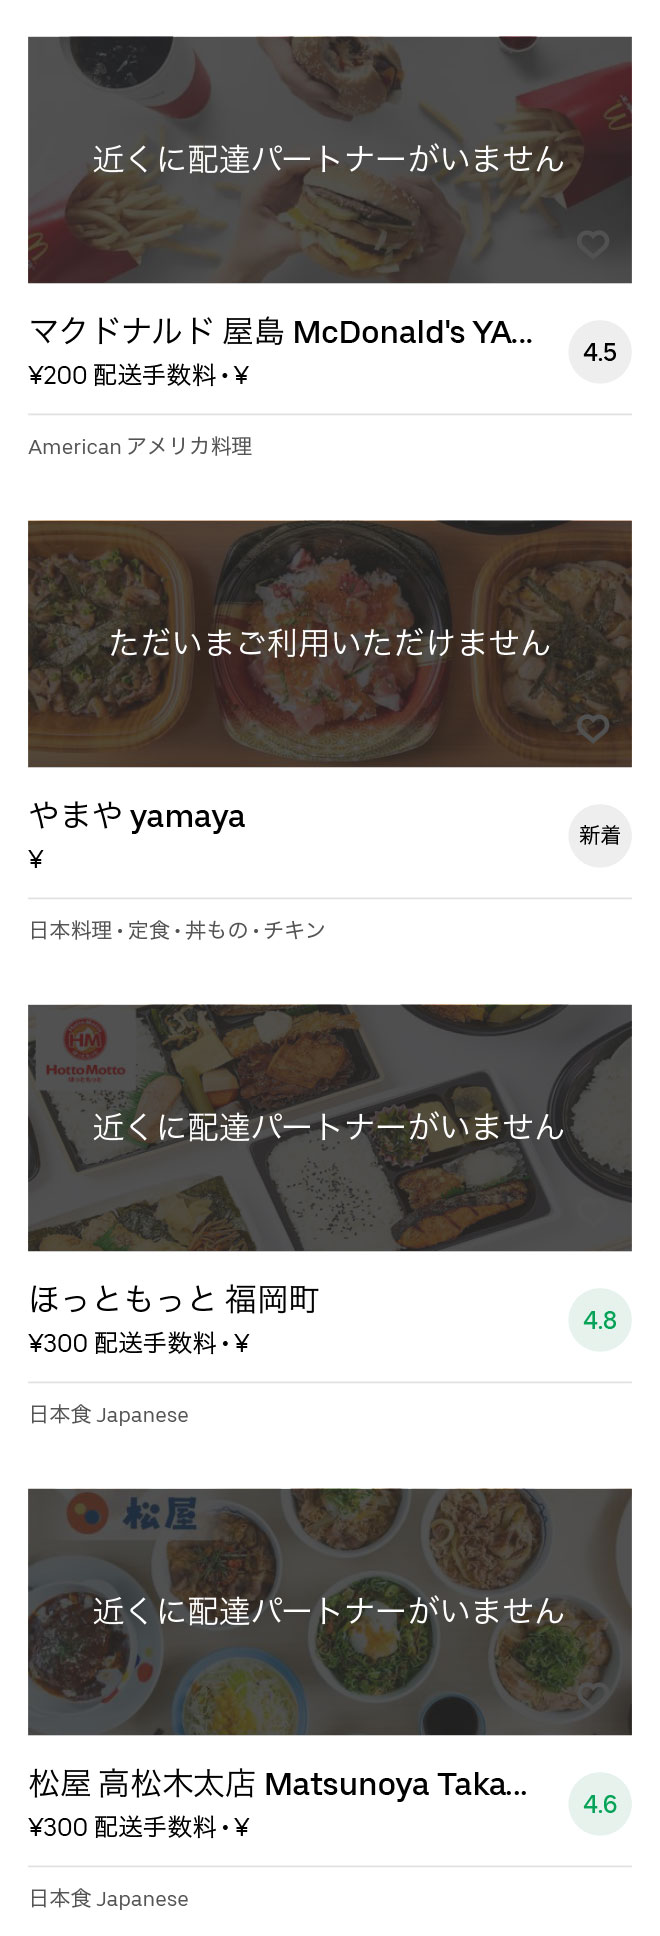 Katamoto menu 2008 03